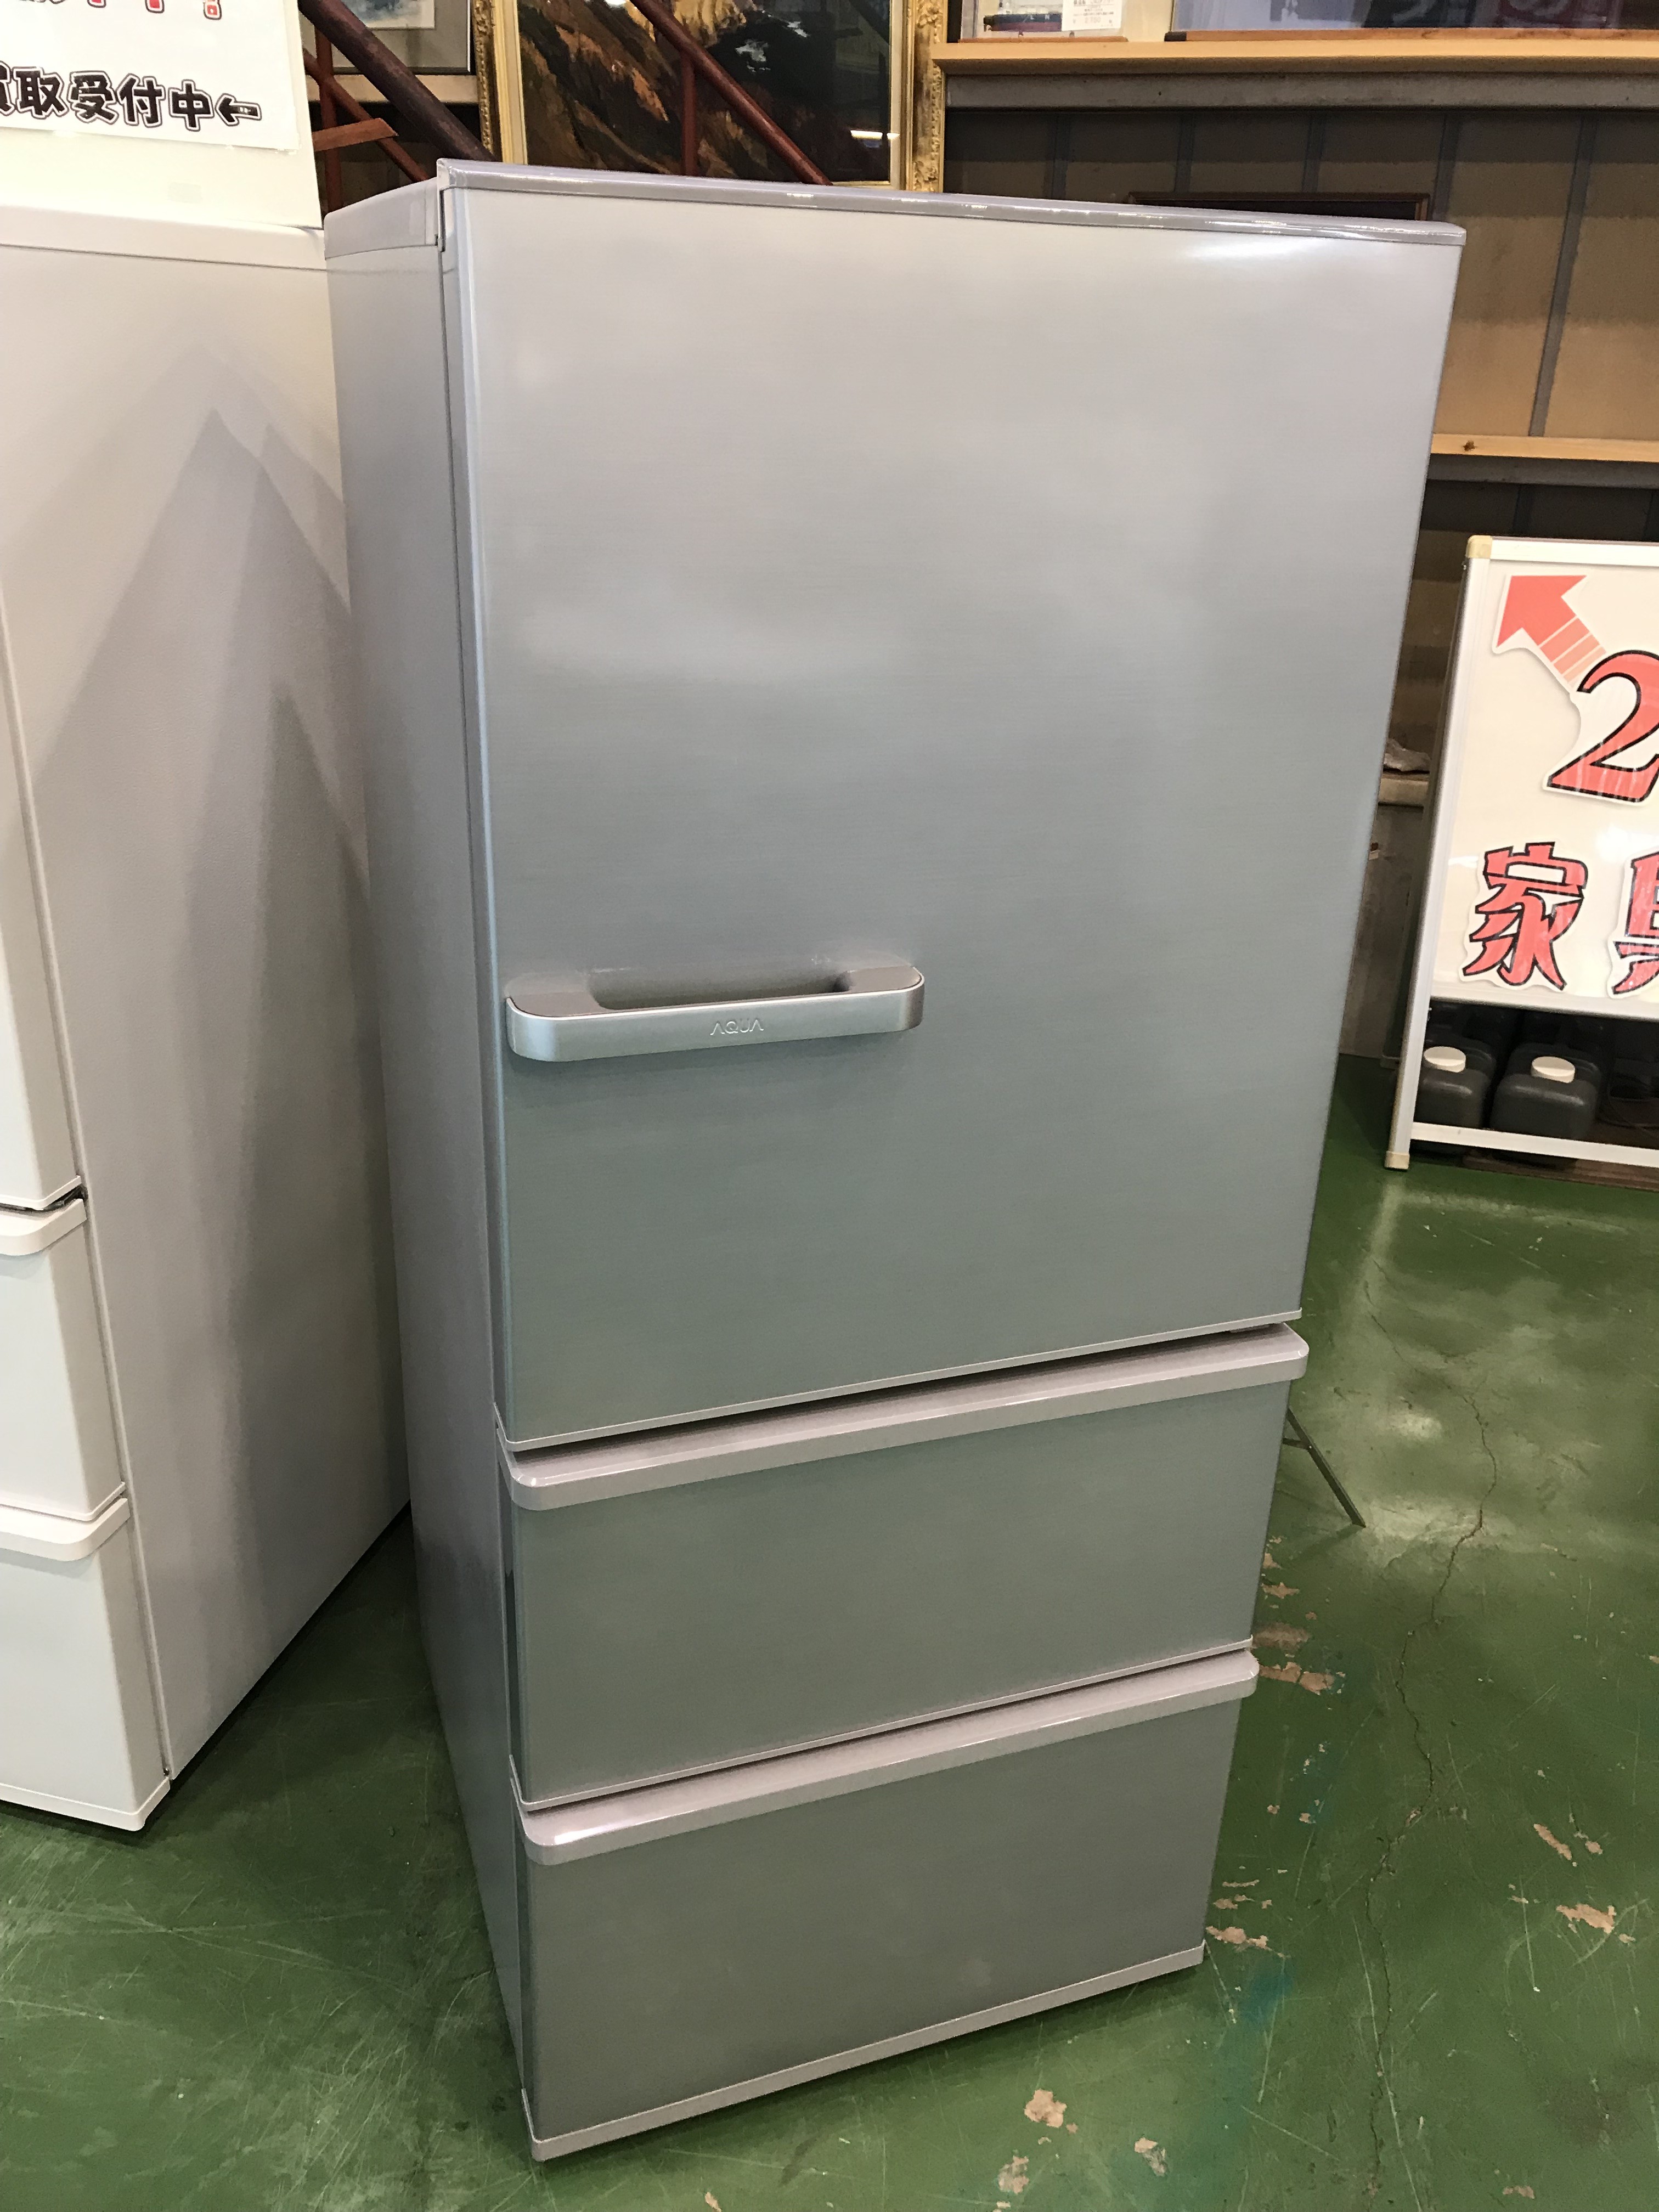 AQUA 3ドア冷蔵庫AQR-27H買取致しました|愛品館八千代店 | リサイクル 